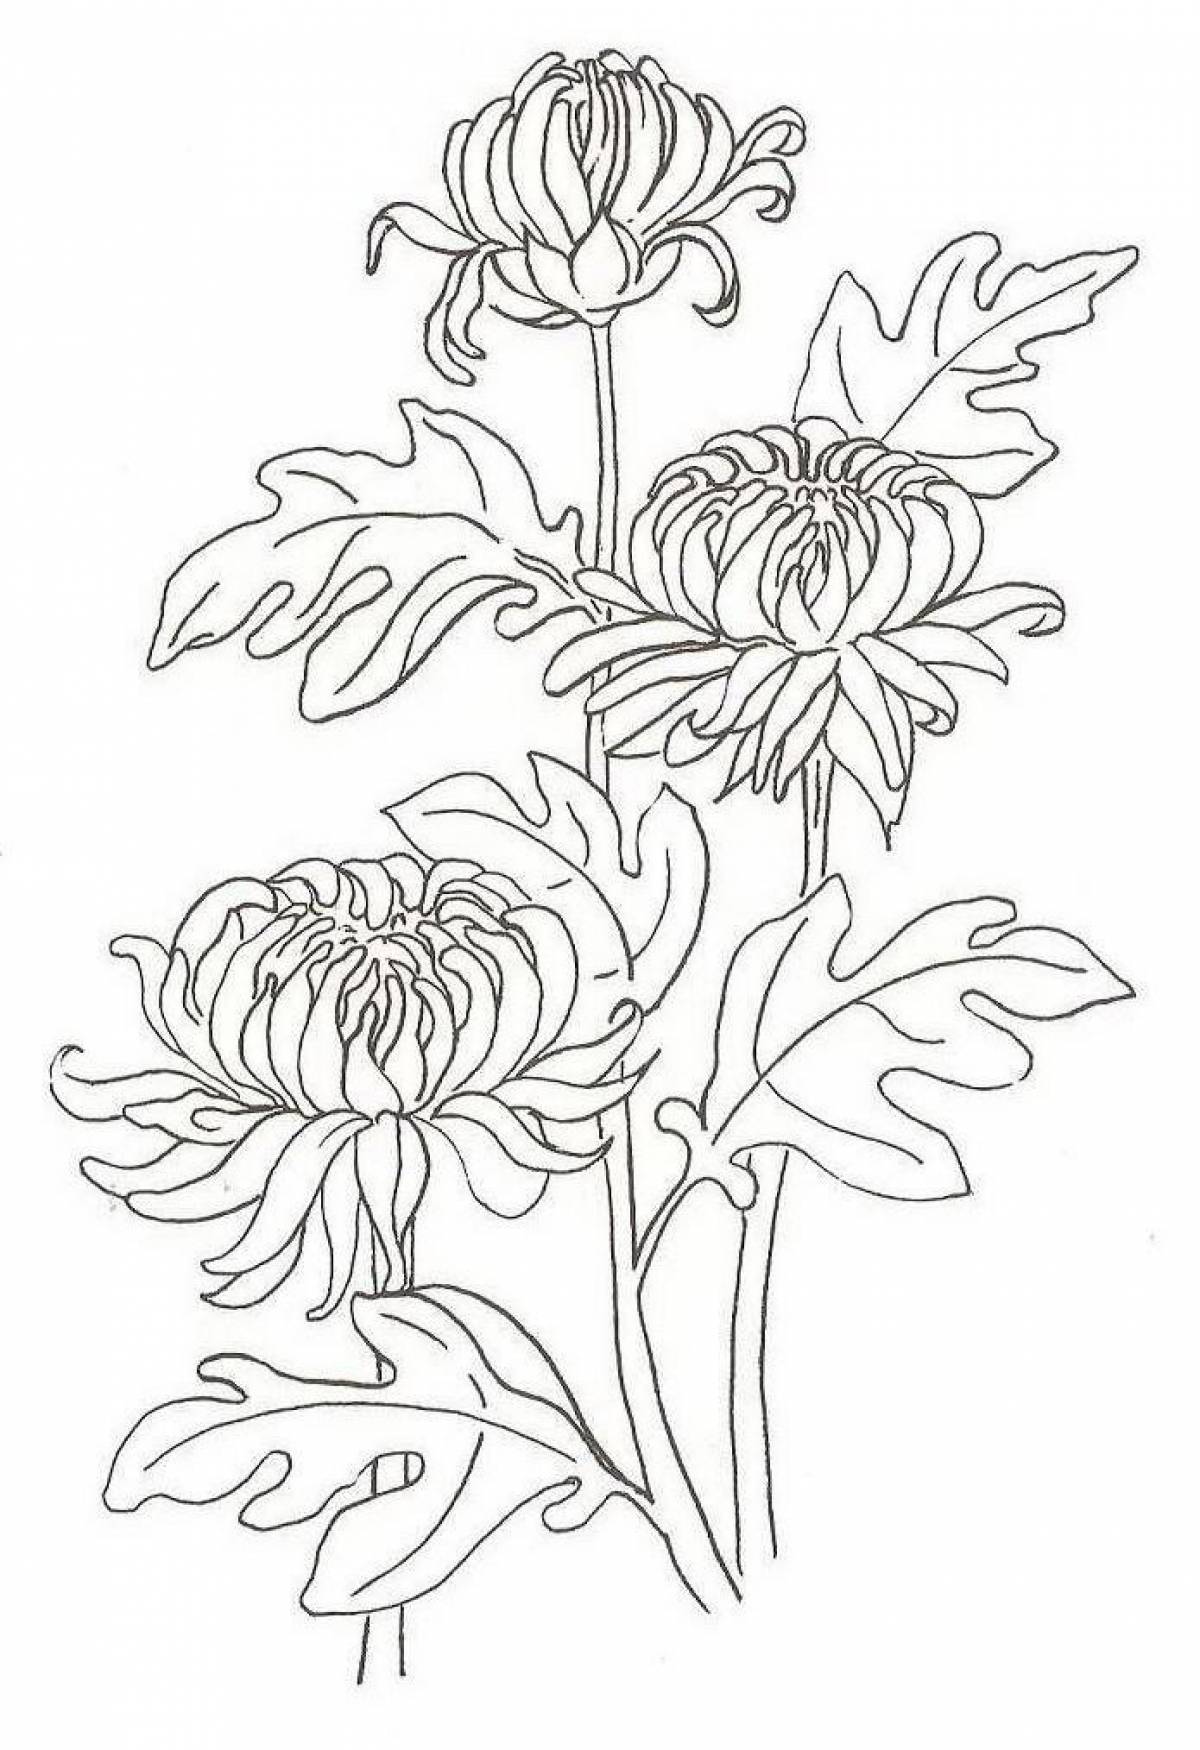 Chrysanthemum coloring page